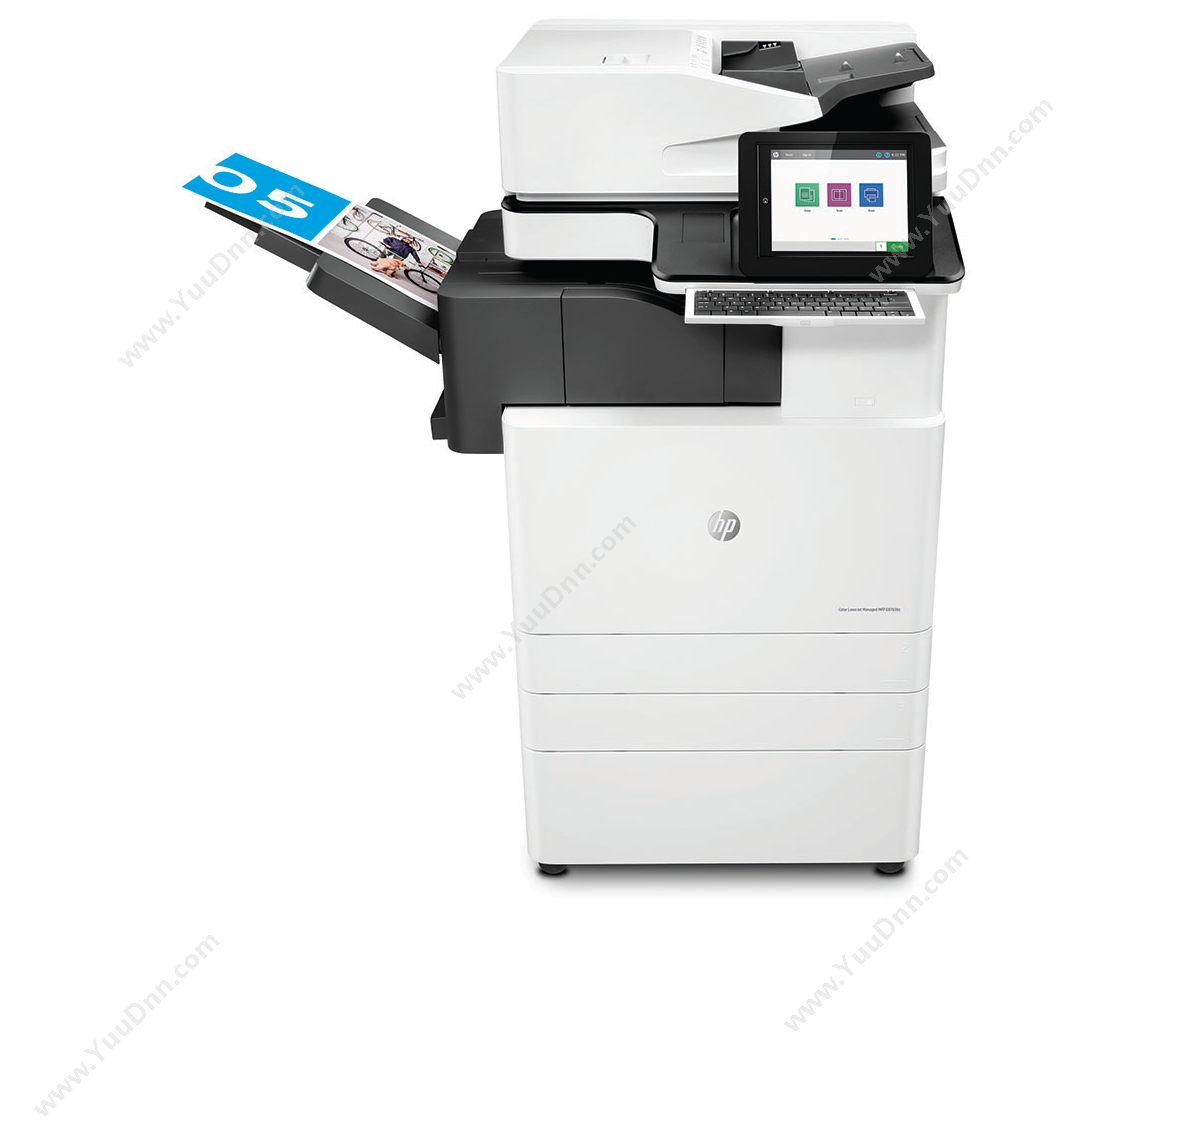 惠普 HP A3X3A89AE87650z 激光复合打印机